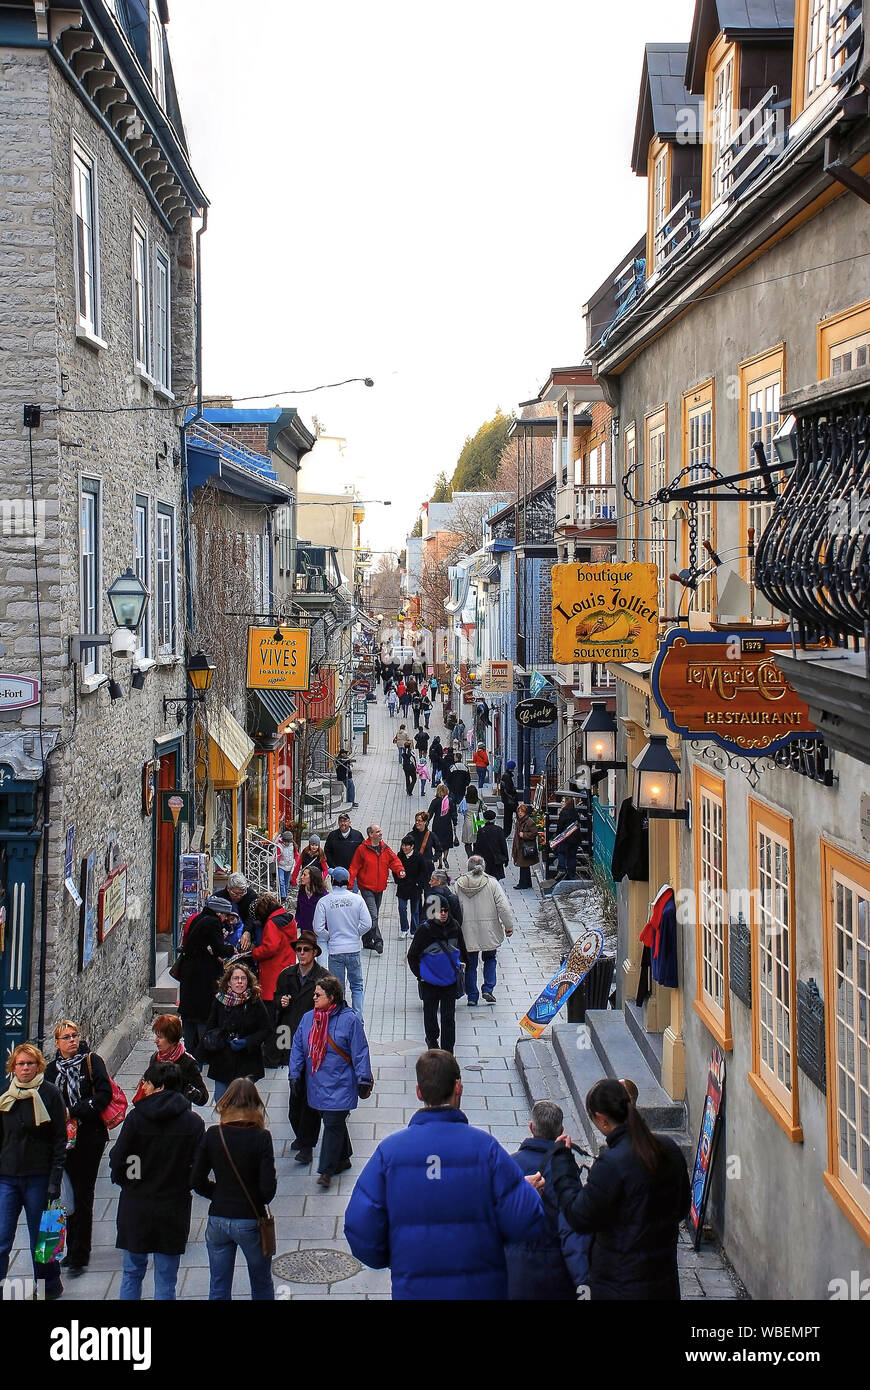 La città di Quebec, Canada - aprile, 10, 2009: una folla di persone sulla trafficata Quartier du Petit Champlain nella Vecchia Quebec City. Esso è sostenuto di essere la più antica c Foto Stock